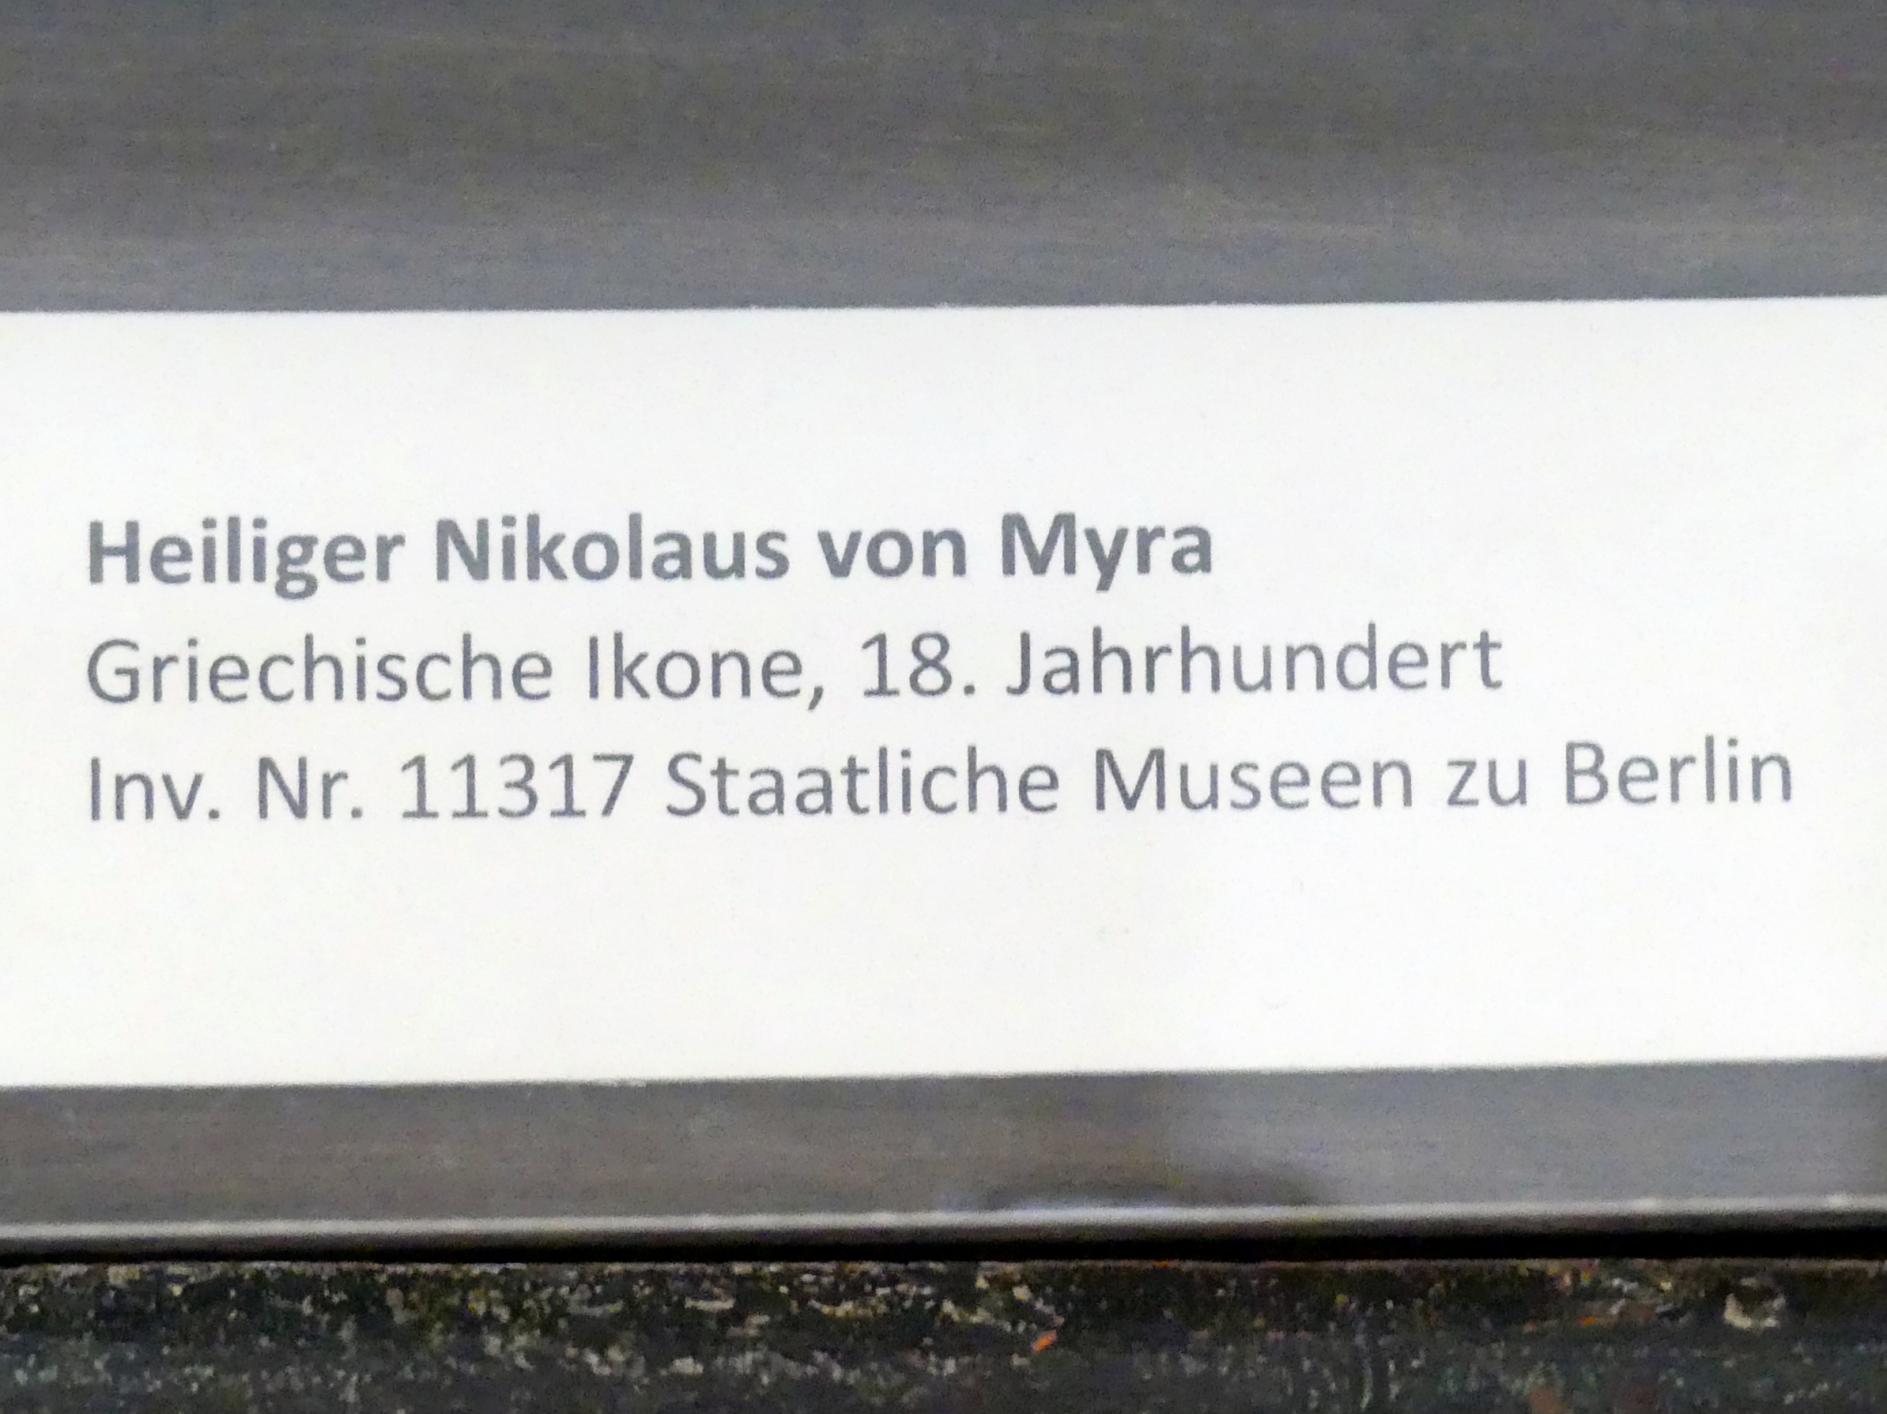 Heiliger Nikolaus von Myra, Frankfurt am Main, Ikonen-Museum, Erdgeschoss, 18. Jhd., Bild 2/2